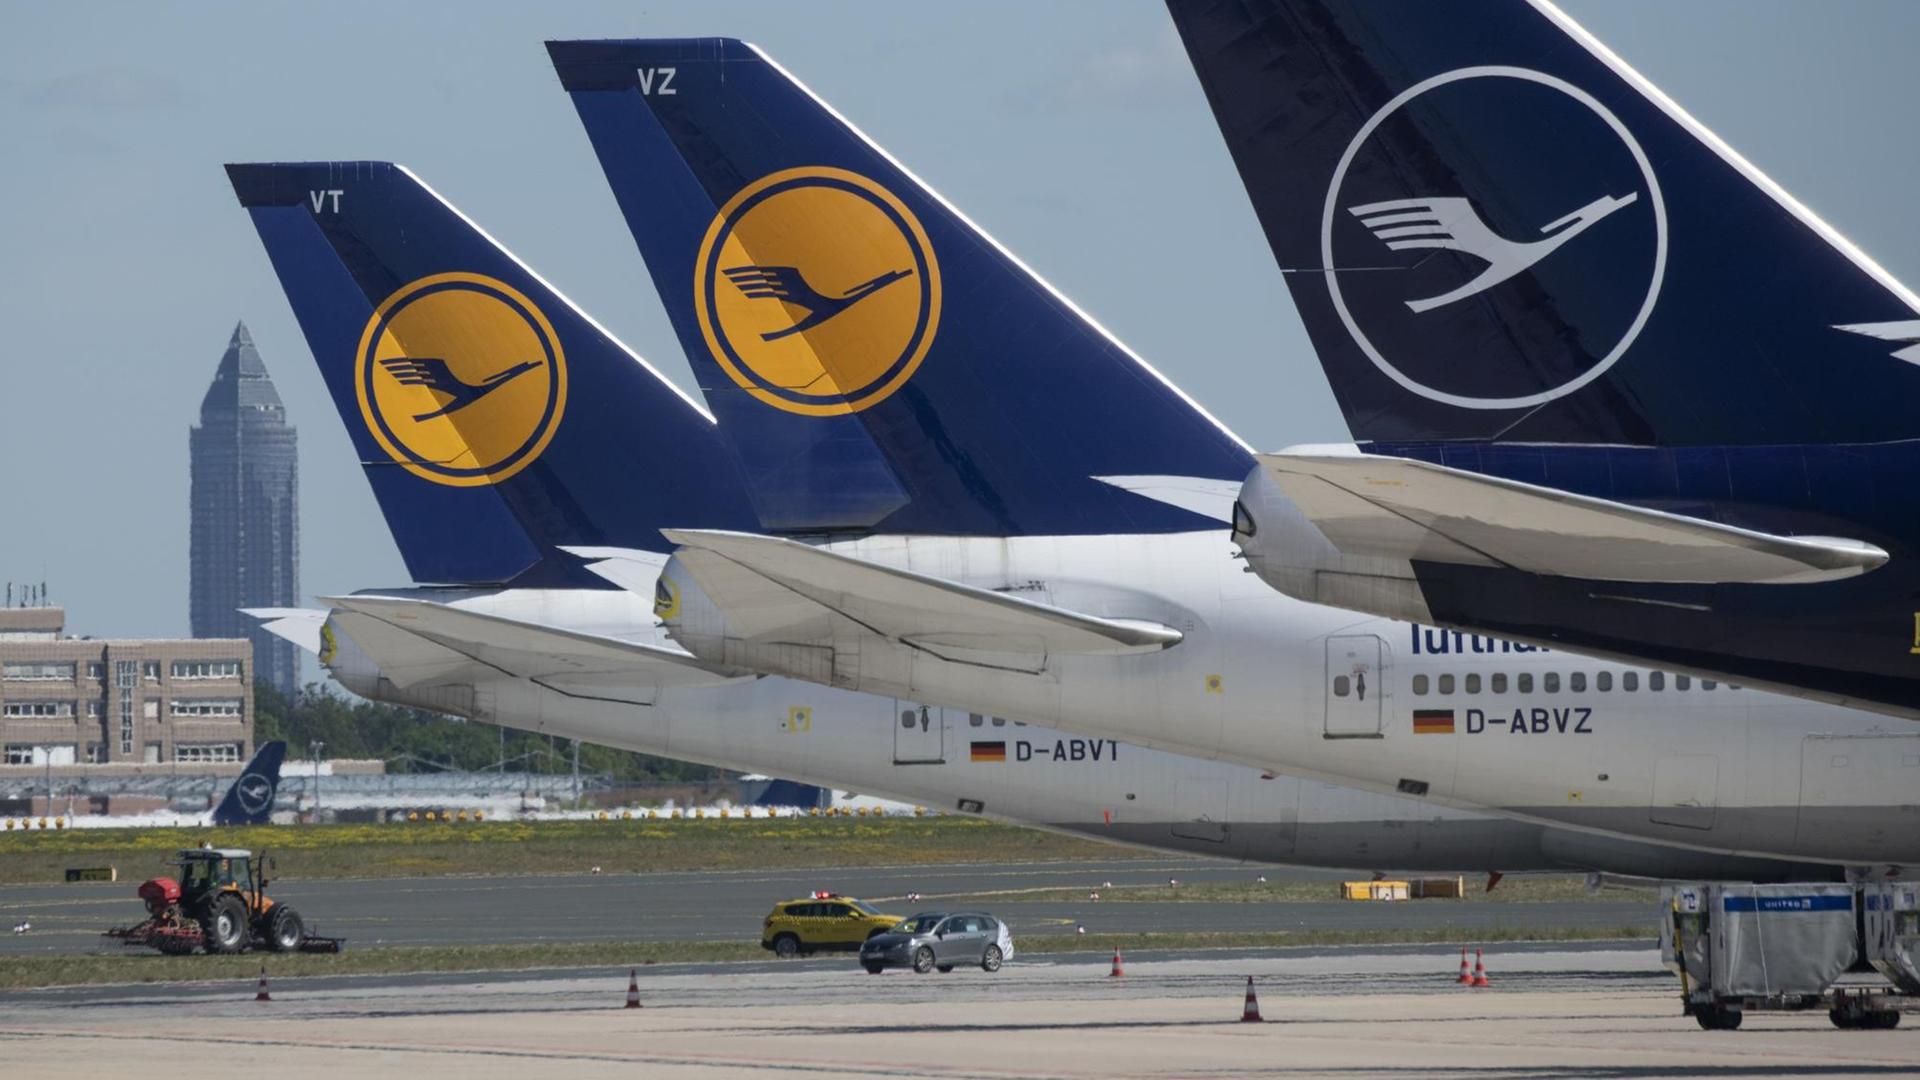 Lufthansa-Flugzeuge stehen auf dem Flug-Hafen am Boden.